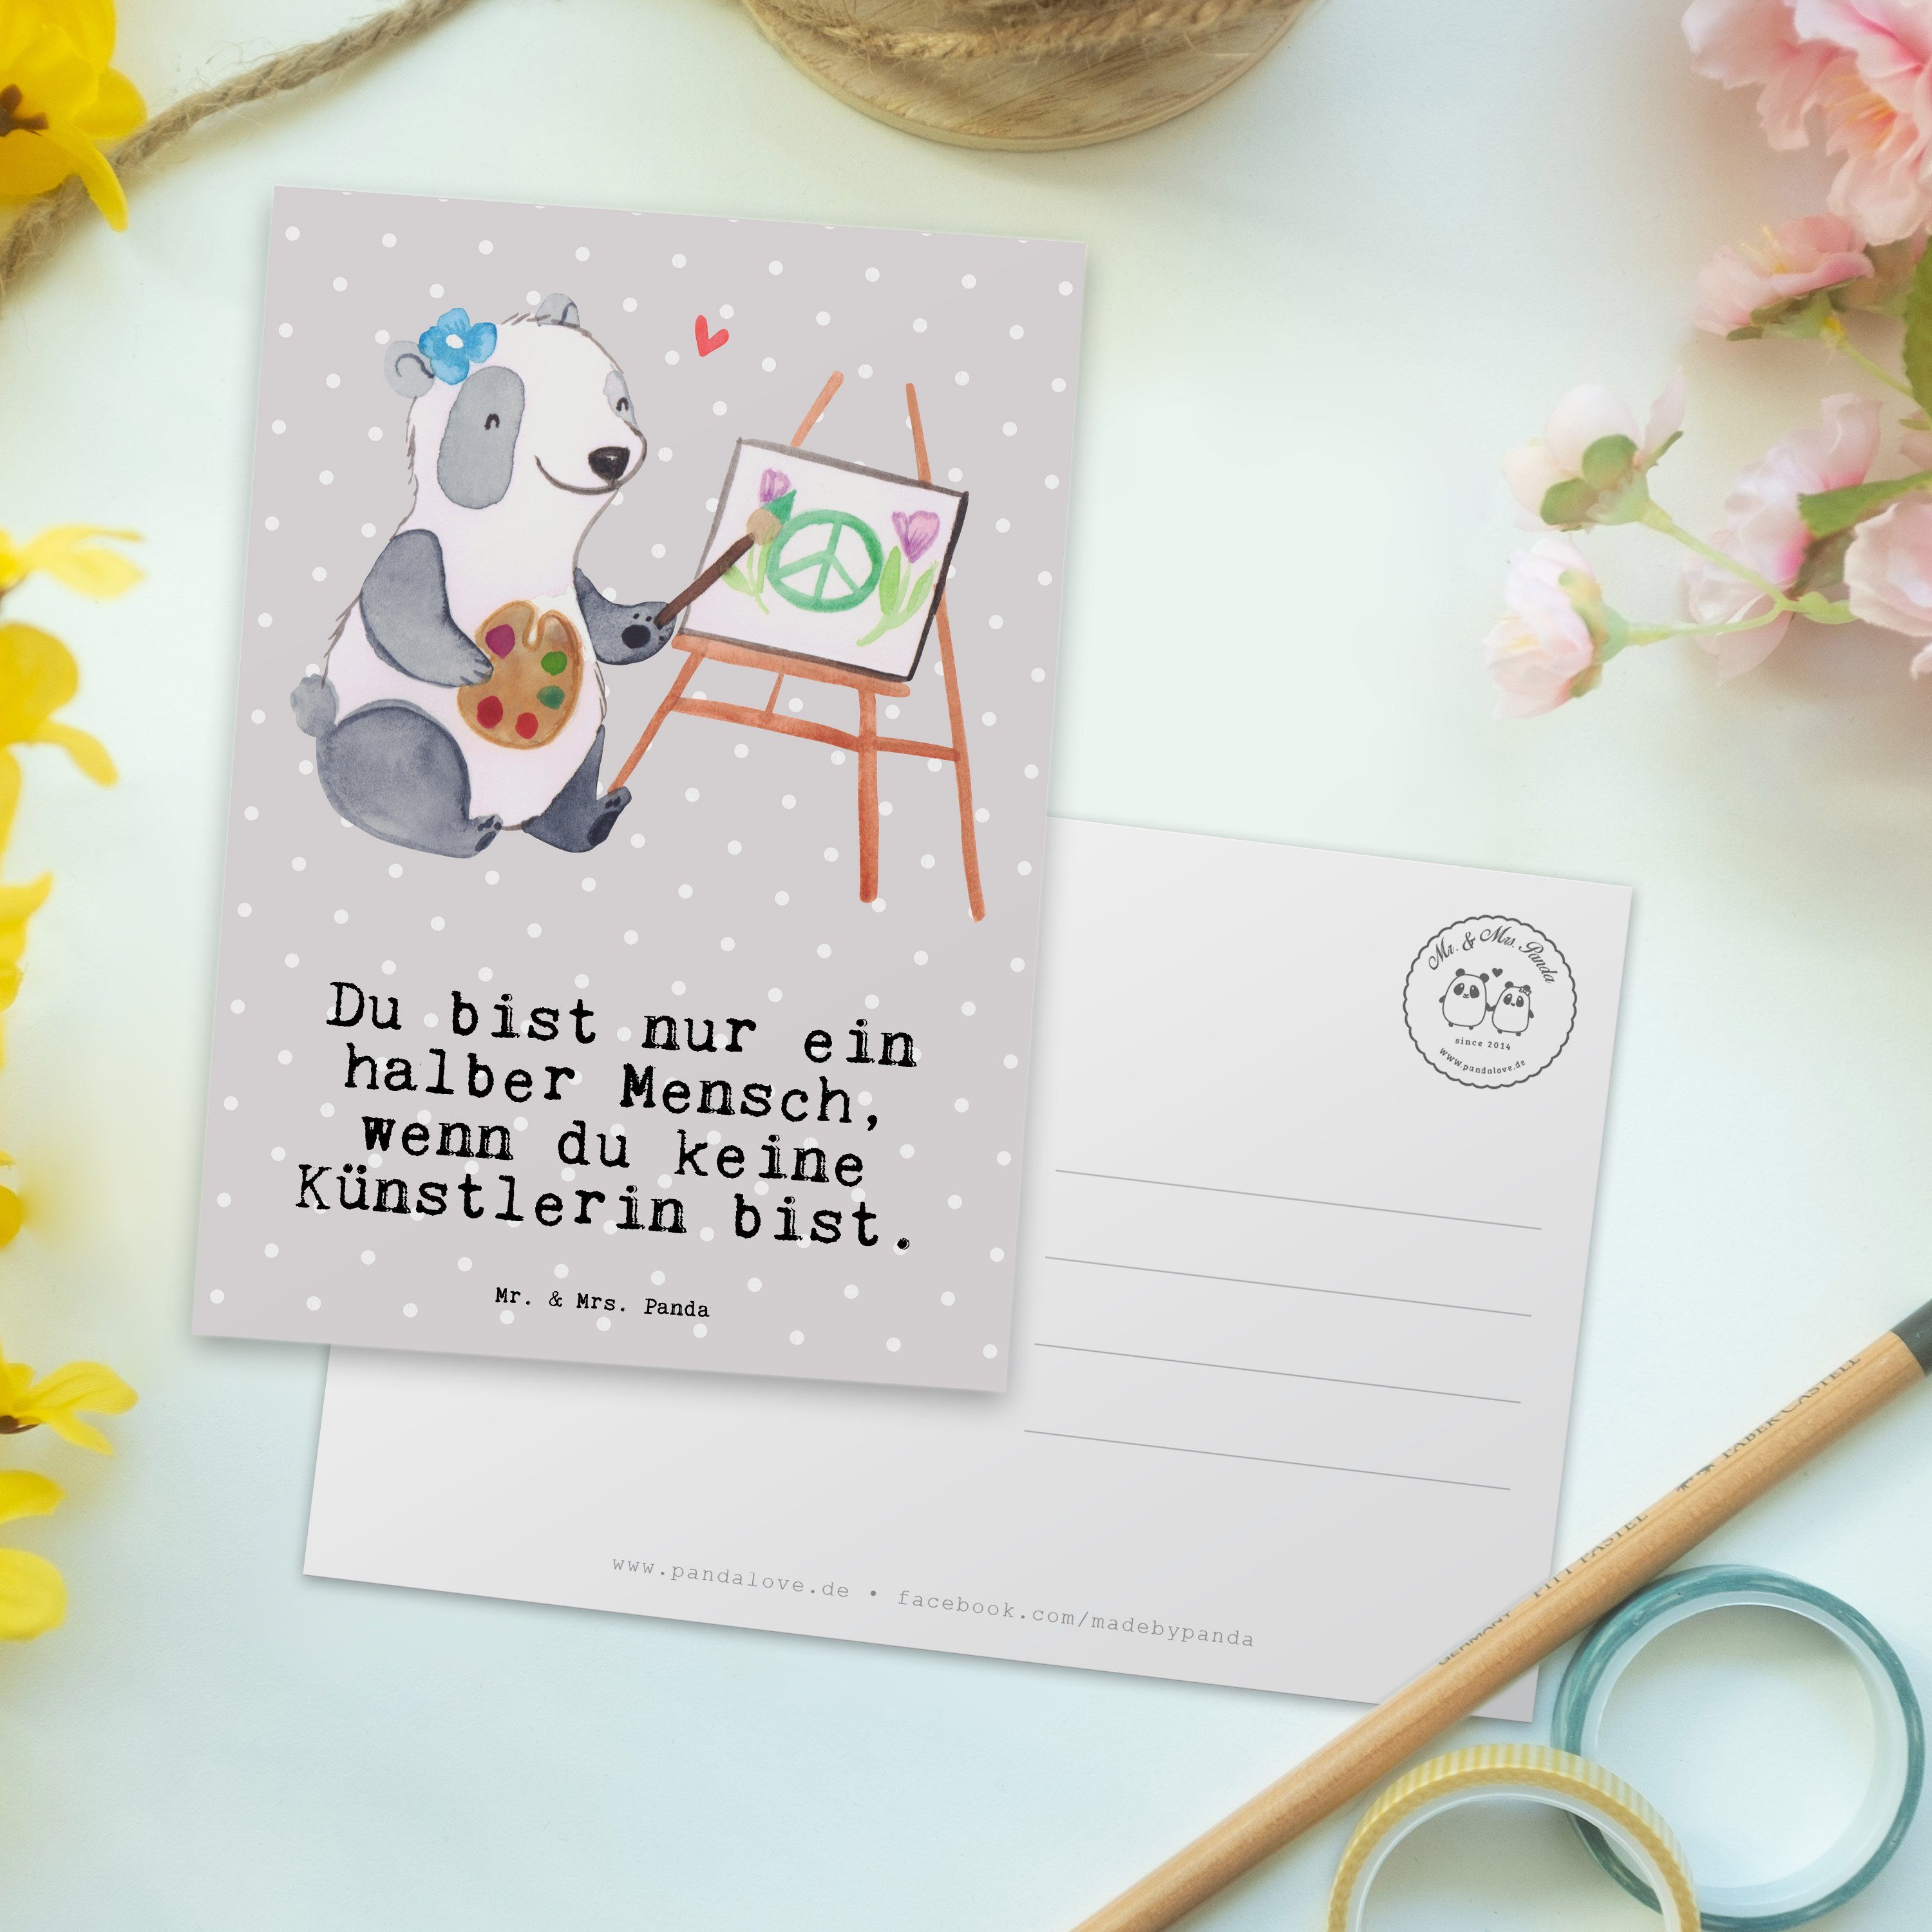 Mr. & Mrs. Panda Postkarte Künstlerin mit Herz - Grau Pastell - Geschenk, Dankeschön, Kunstmaler